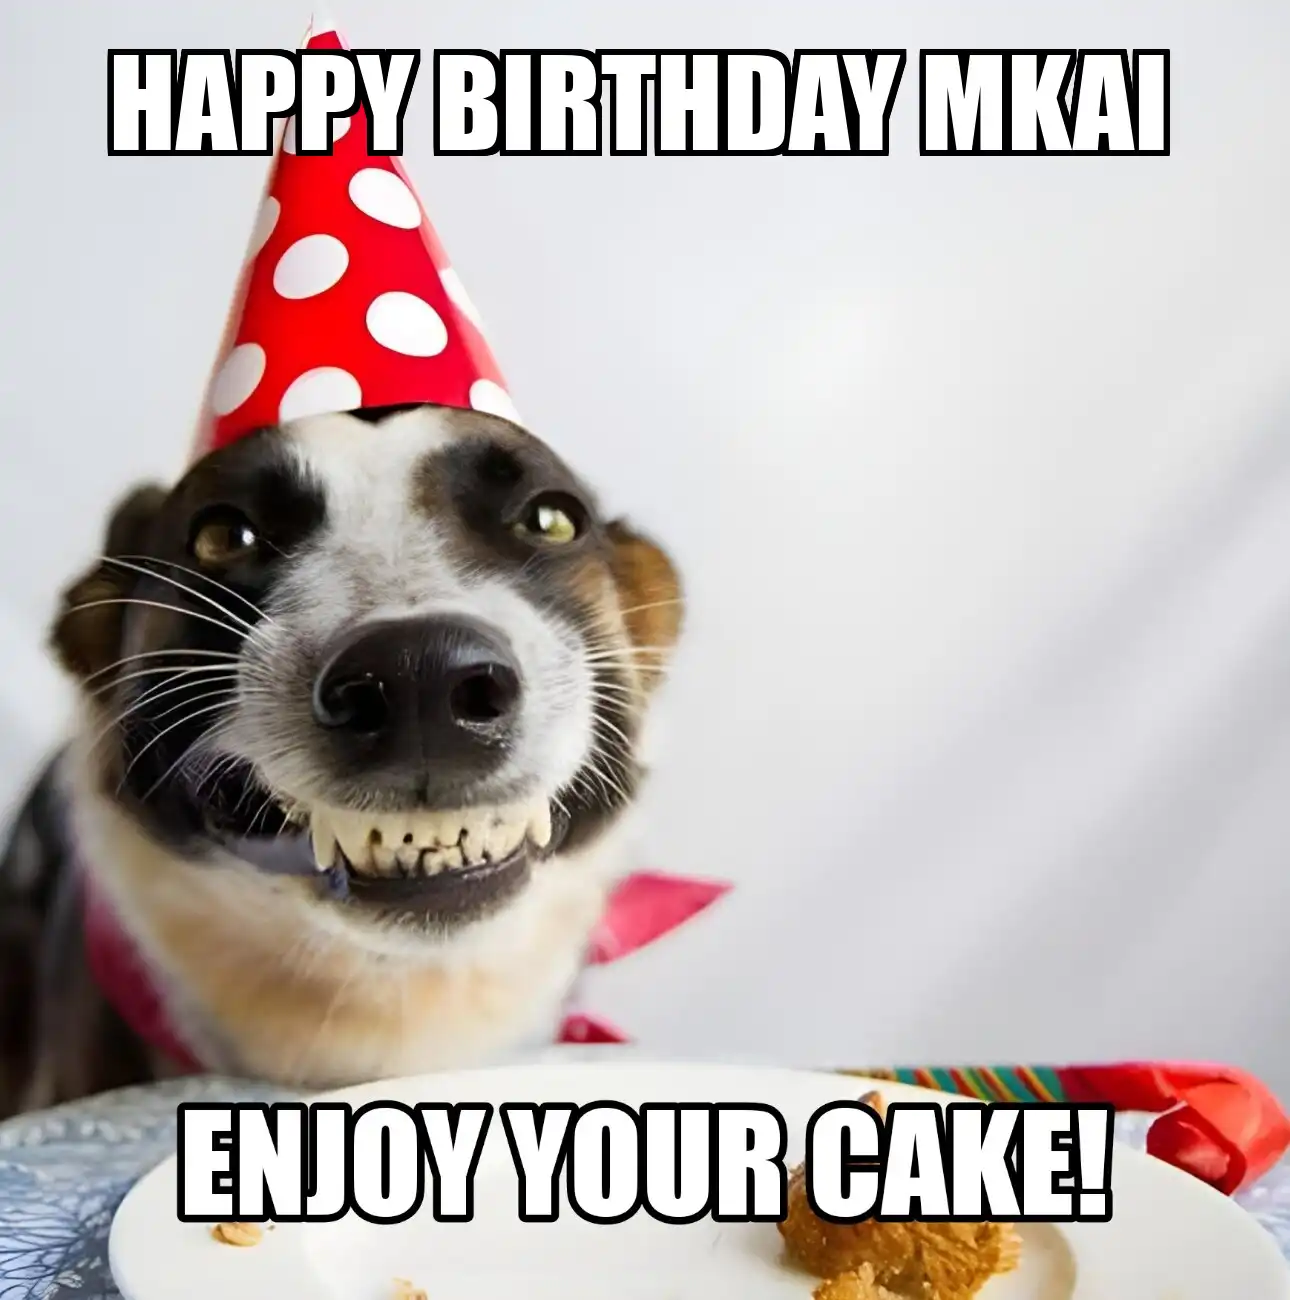 Happy Birthday Mkai Enjoy Your Cake Dog Meme